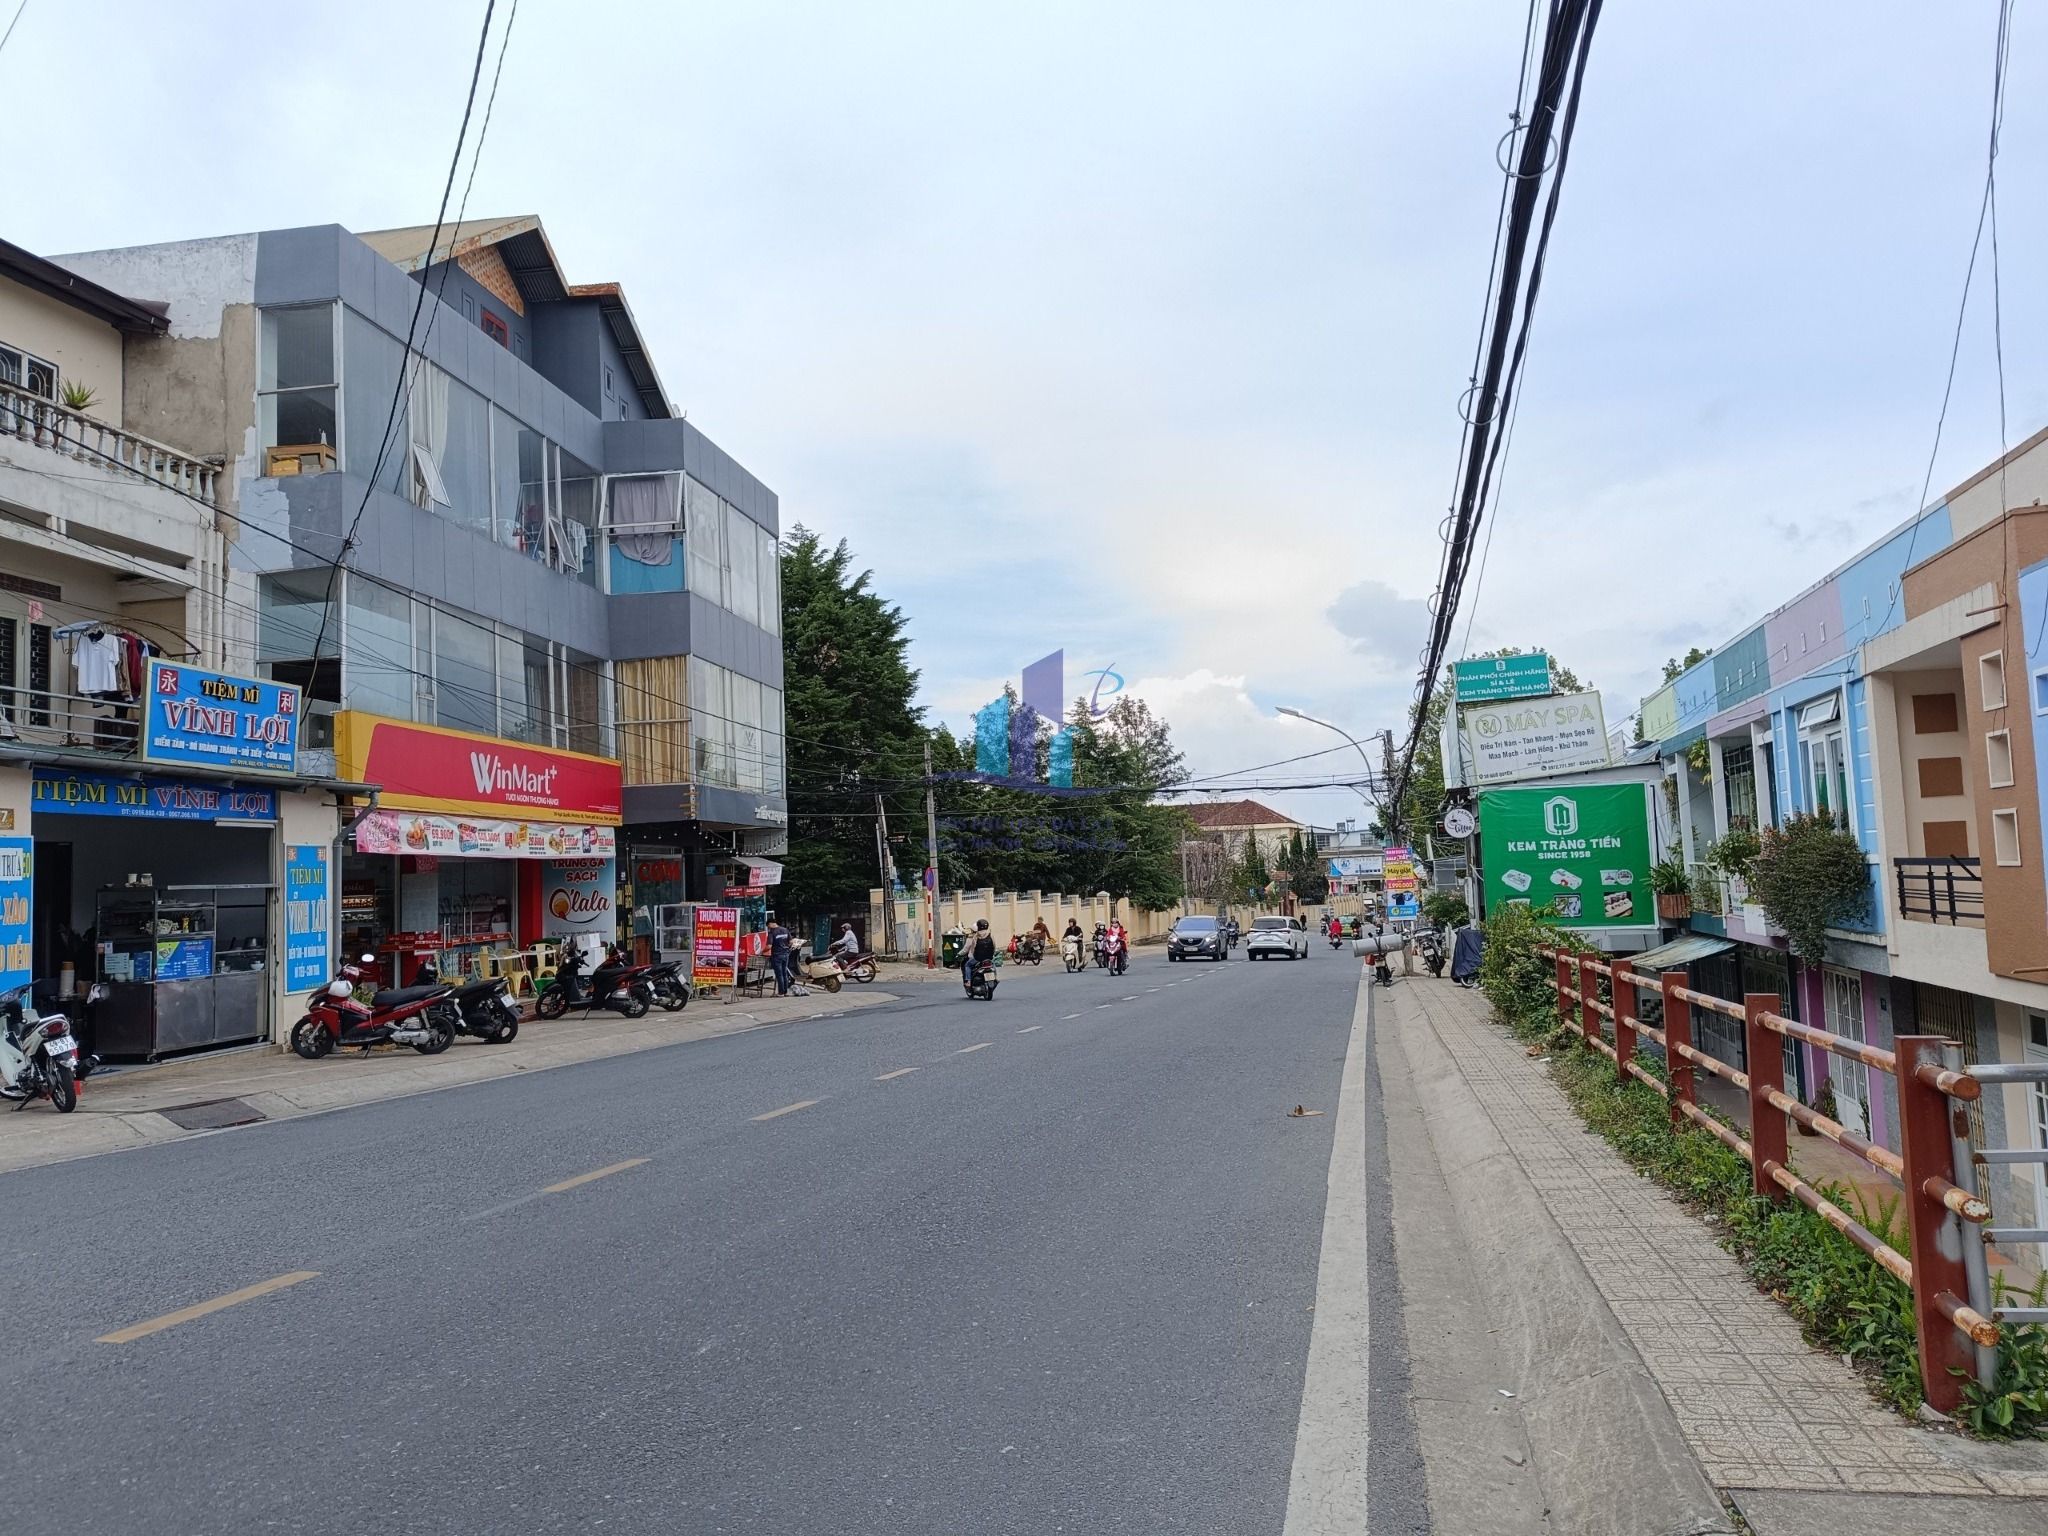  Bán Nhà mặt tiền đường Ngô Quyền, Phường 6, Đà Lạt 160,04mv 